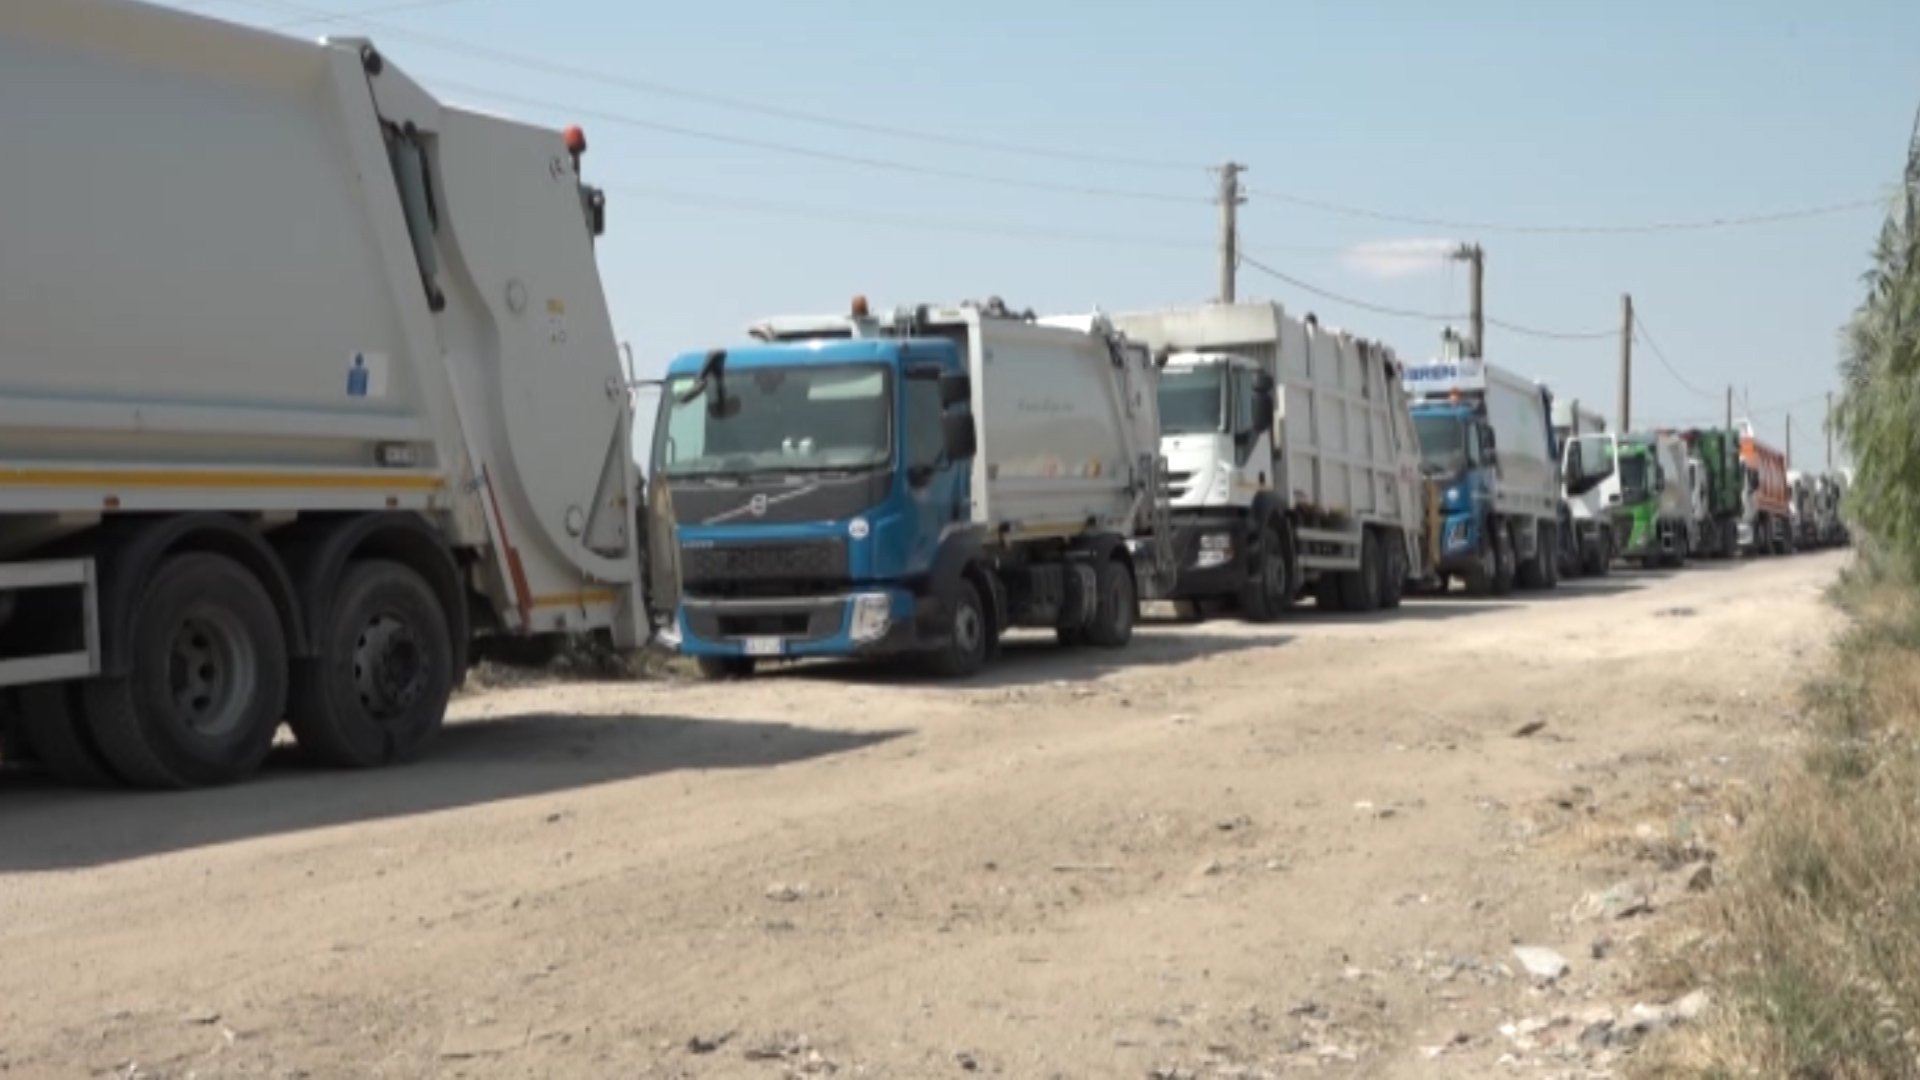 Torna l'incubo rifiuti nella provincia di Foggia, decine di camion in coda davanti agli impianti: comuni ad un passo dall'emergenza – Telesveva Notizie